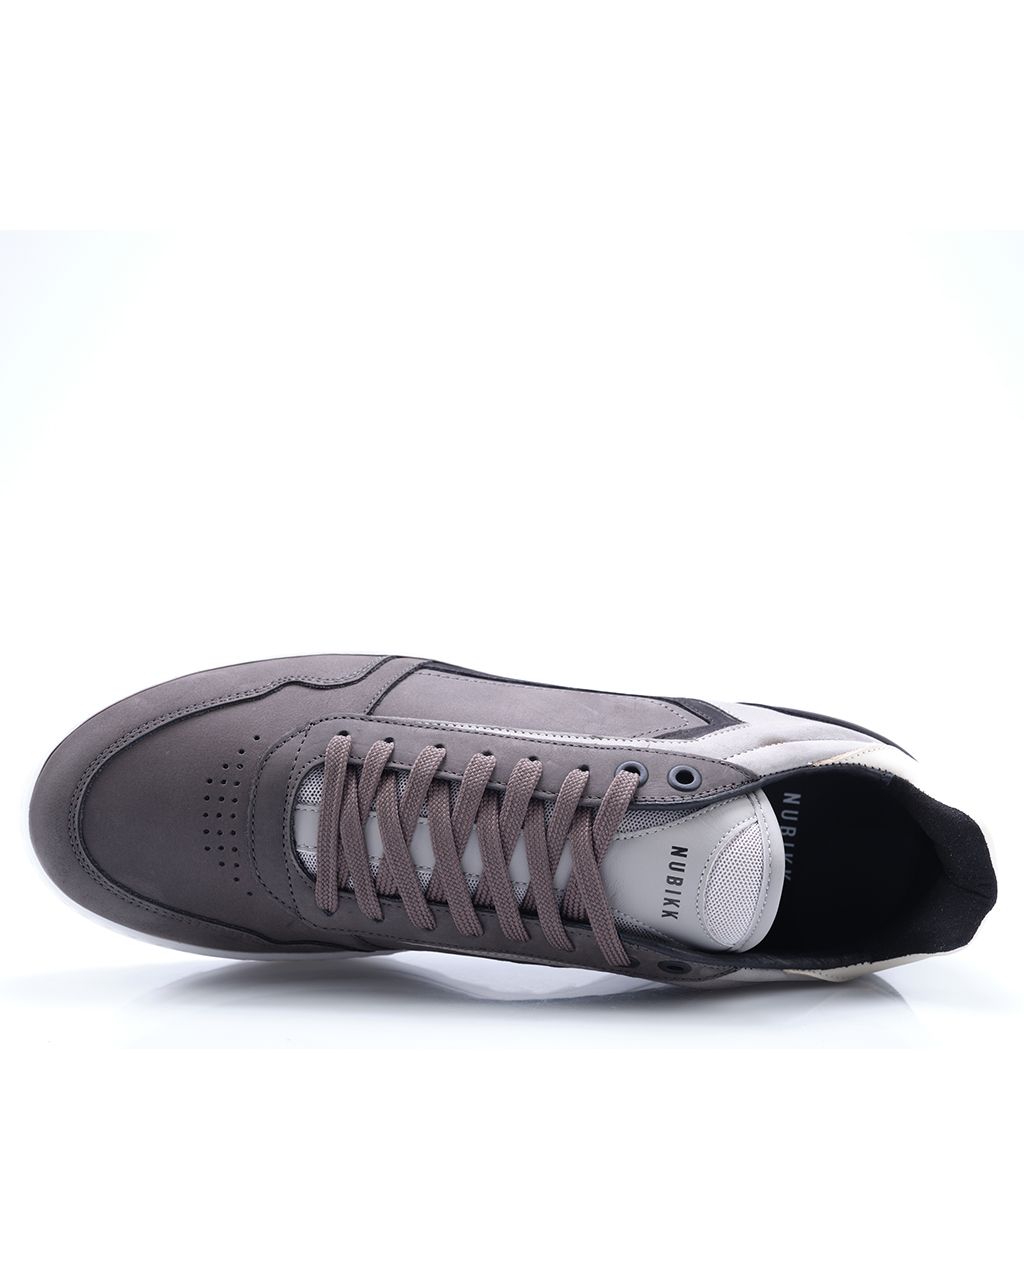 Nubikk Cliff Cane Sneakers Grijs 081226-001-40